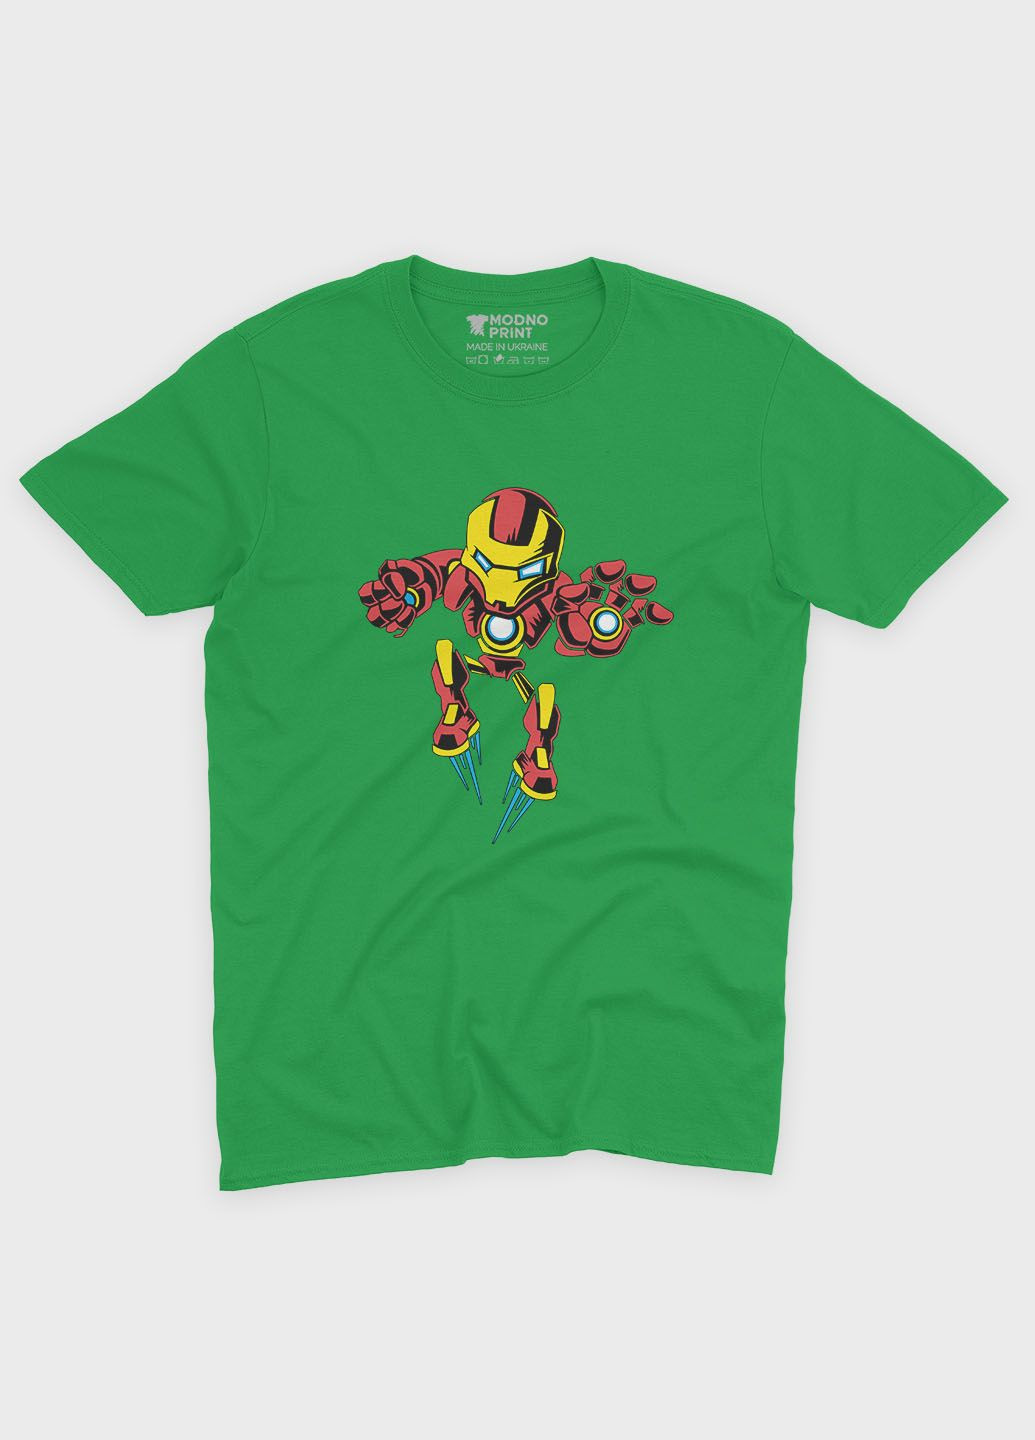 Зелена демісезонна футболка для дівчинки з принтом супергероя - залізна людина (ts001-1-keg-006-016-025-g) Modno